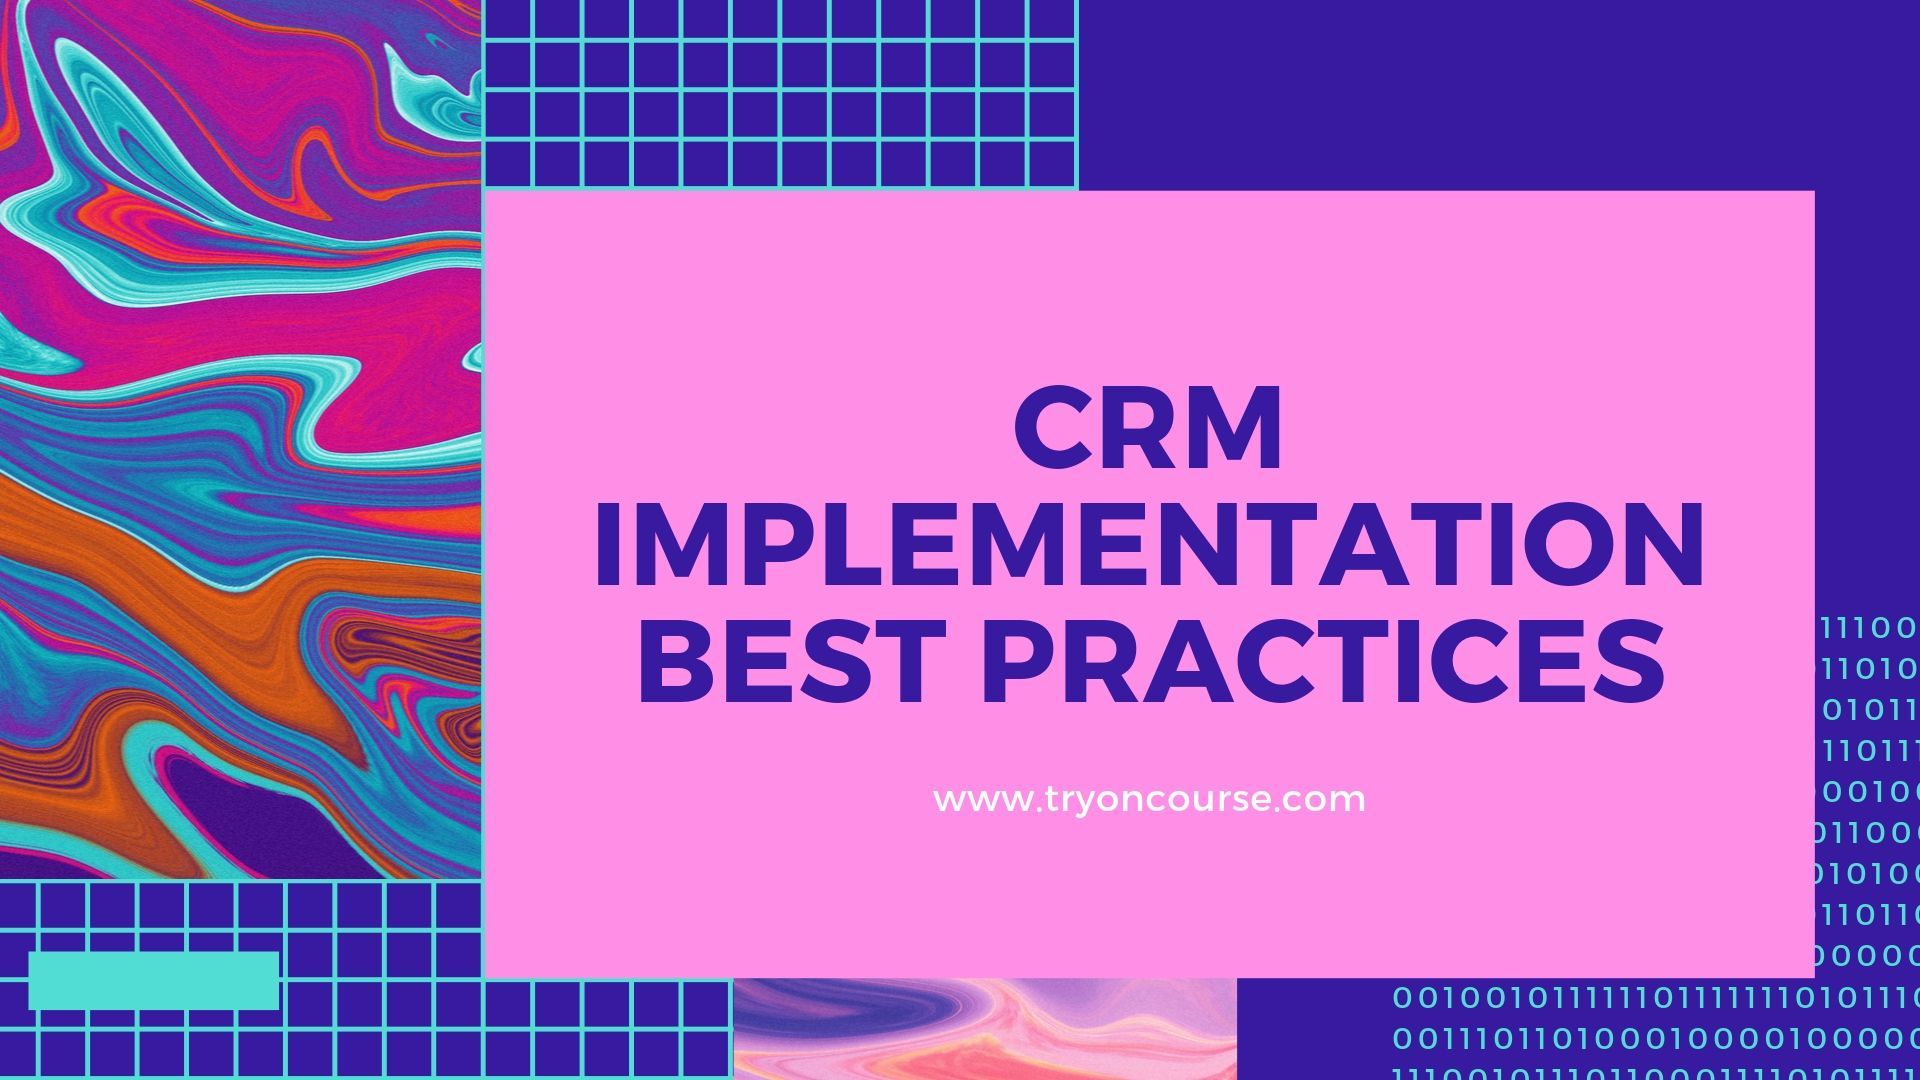 CRM implementation best practices